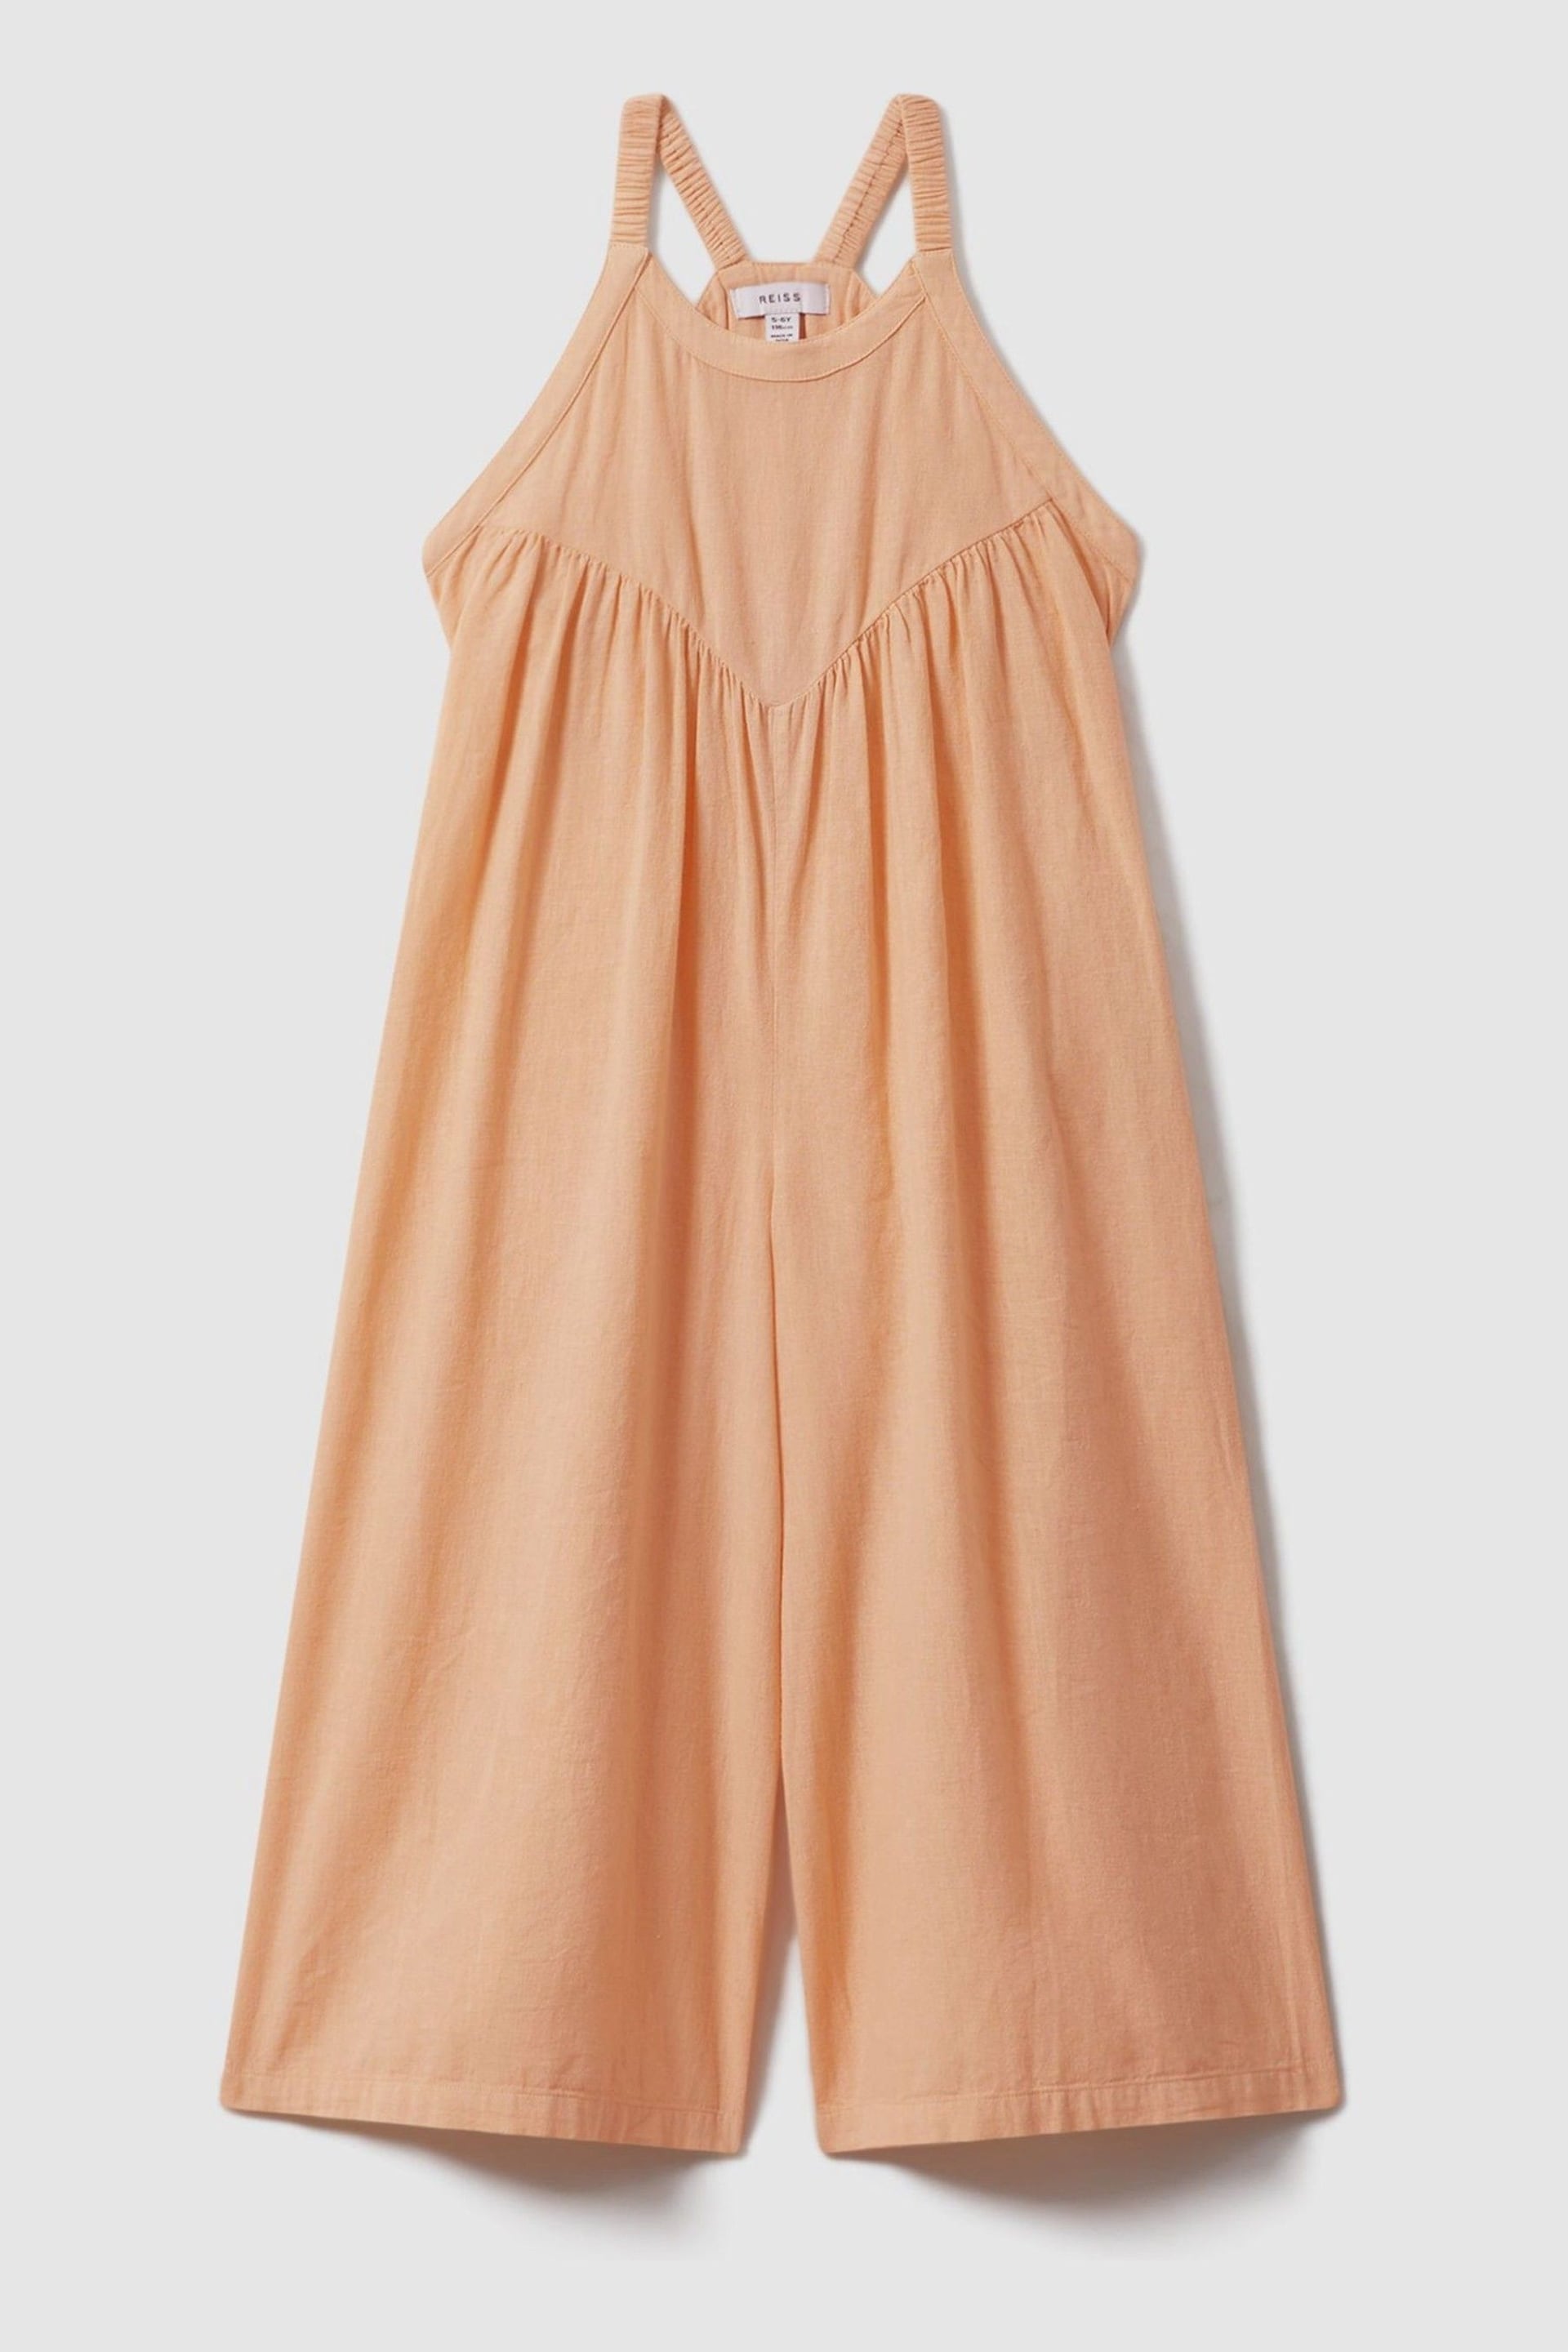 Reiss Peach Daphne Senior Cotton Linen Jumpsuit - Image 2 of 4